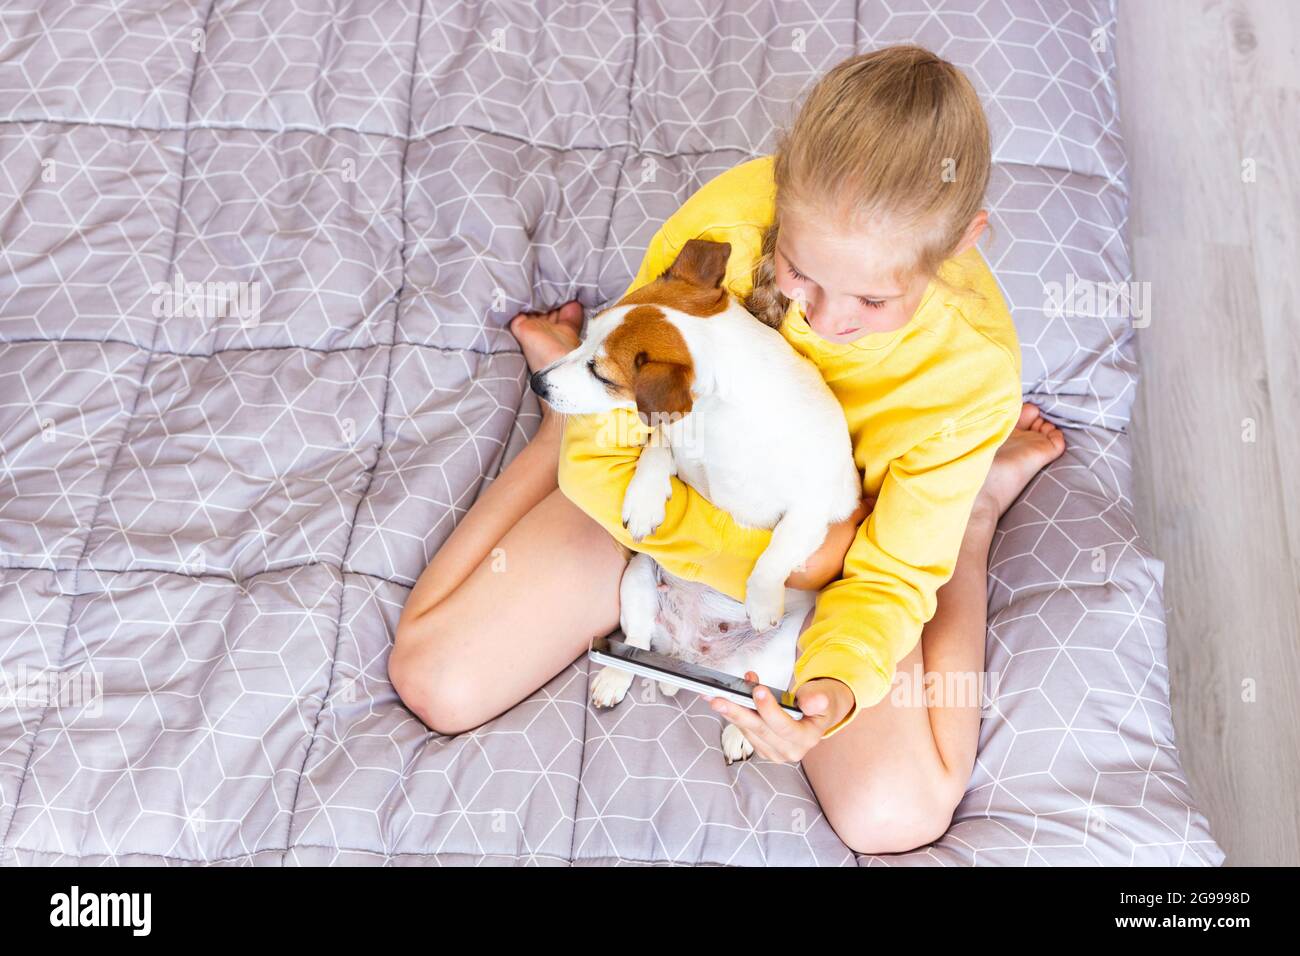 Una ragazza adolescente con un telefono cellulare, abbracciando un cane Jack Russell Terrier, comunica sui social network o via Zoom con amici o familiari, fa un Foto Stock